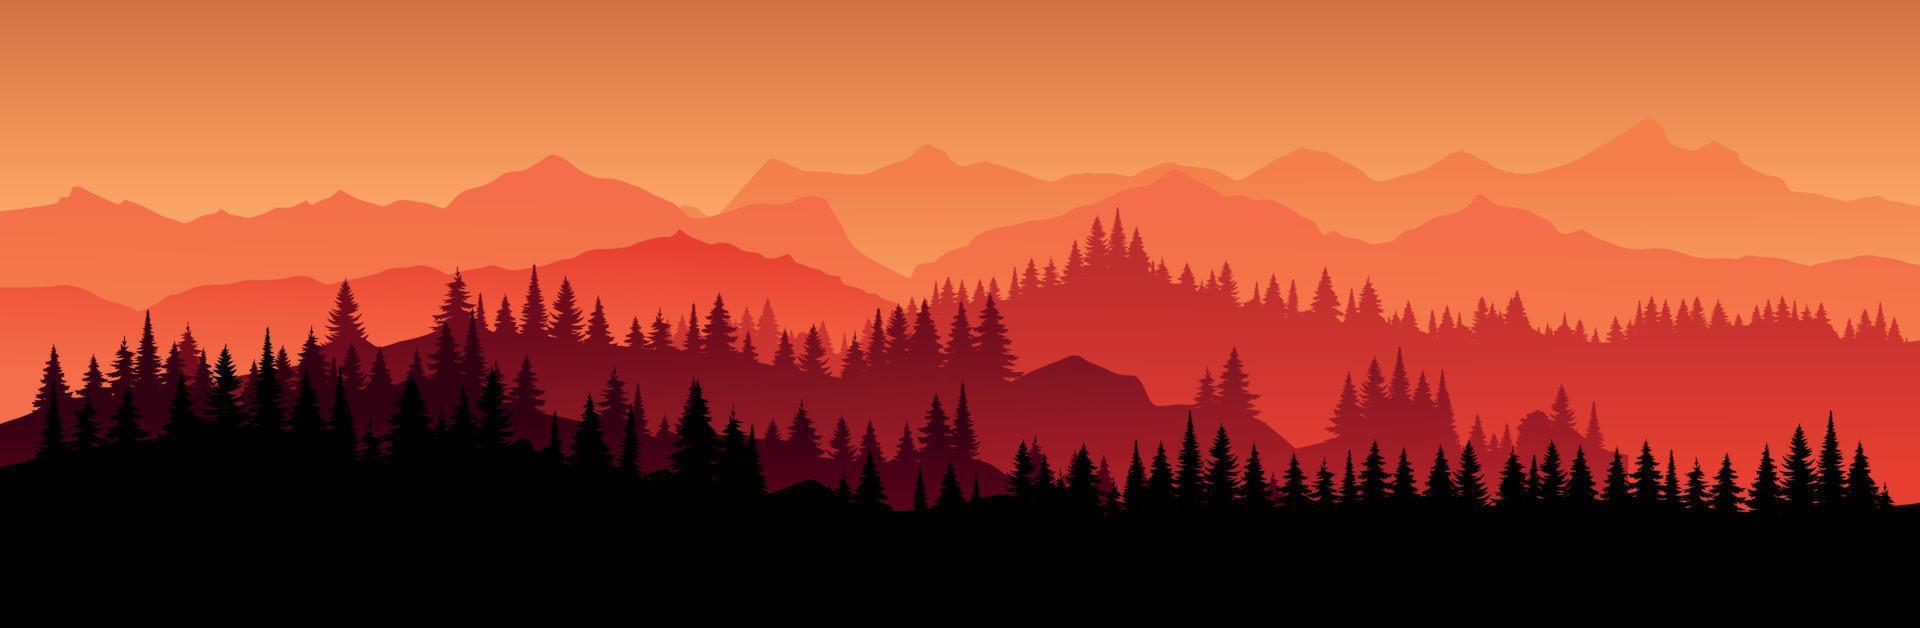 vektor rött horisontellt landskap med dimma, skog julgran, gran, gran och morgon solljus. illustration av panoramautsikt siluett, dimma och silhuetter berg. eld i skogen.